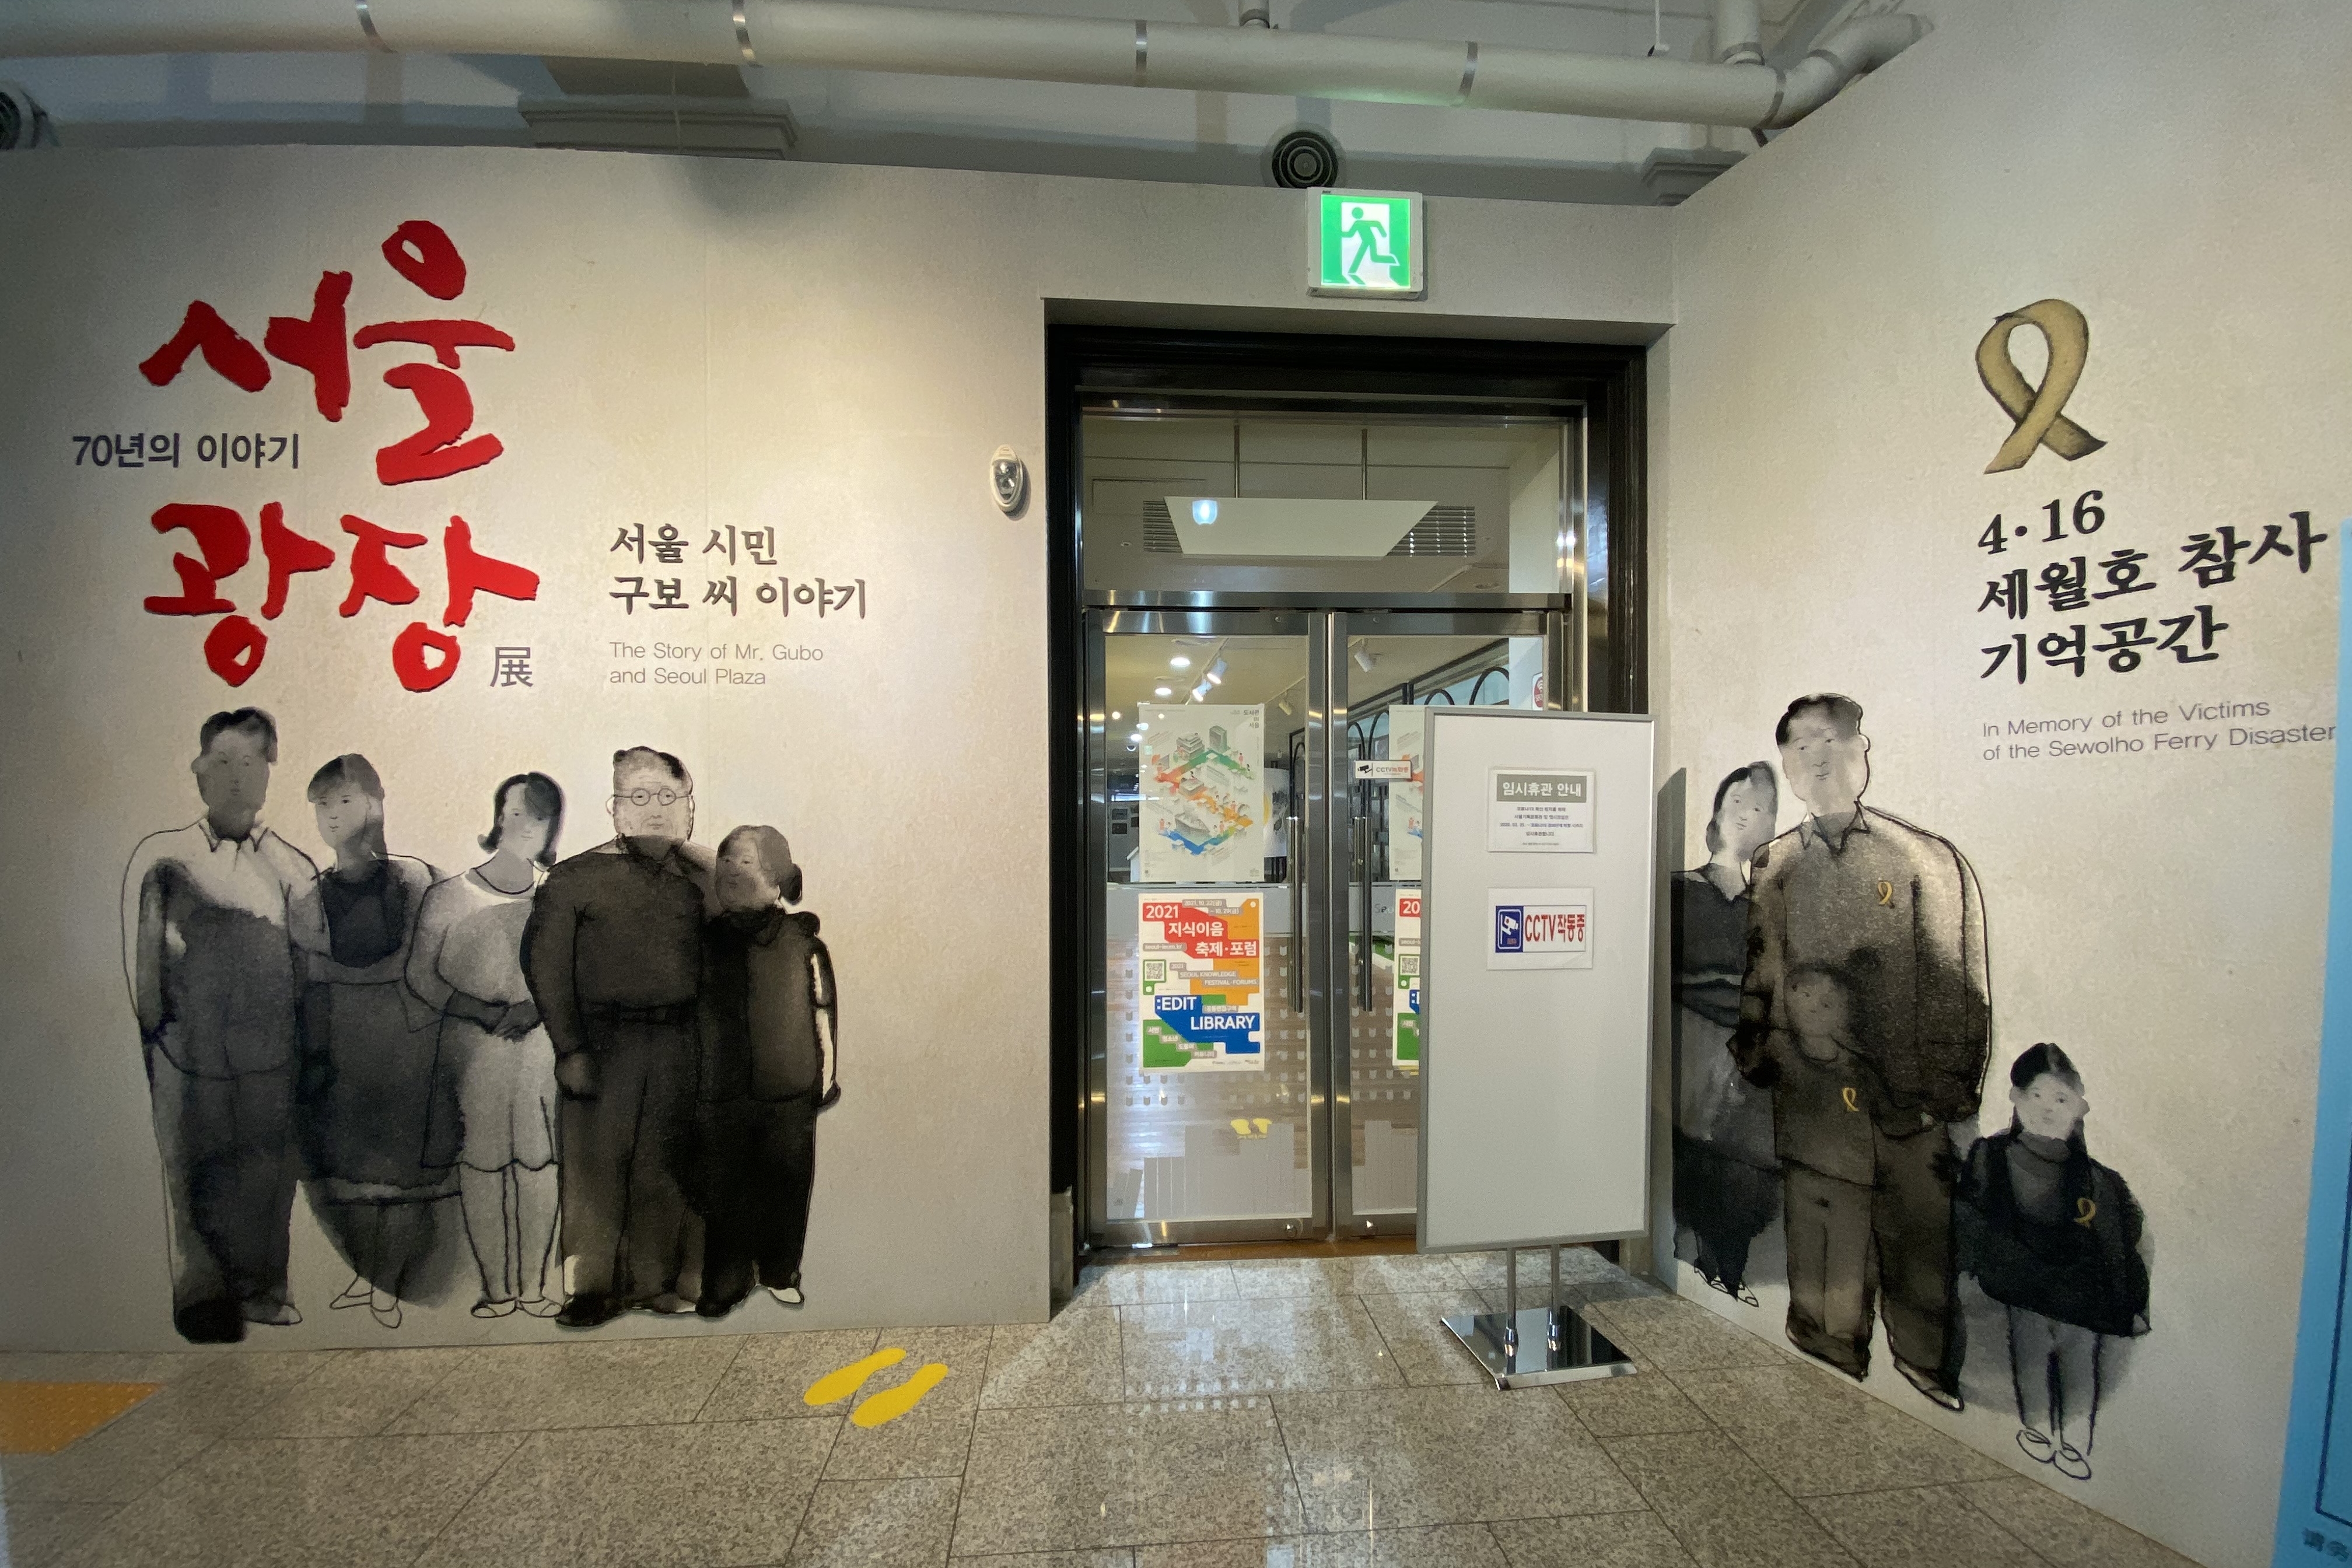 서울도서관2 : 서울도서관 내부 입구 전경